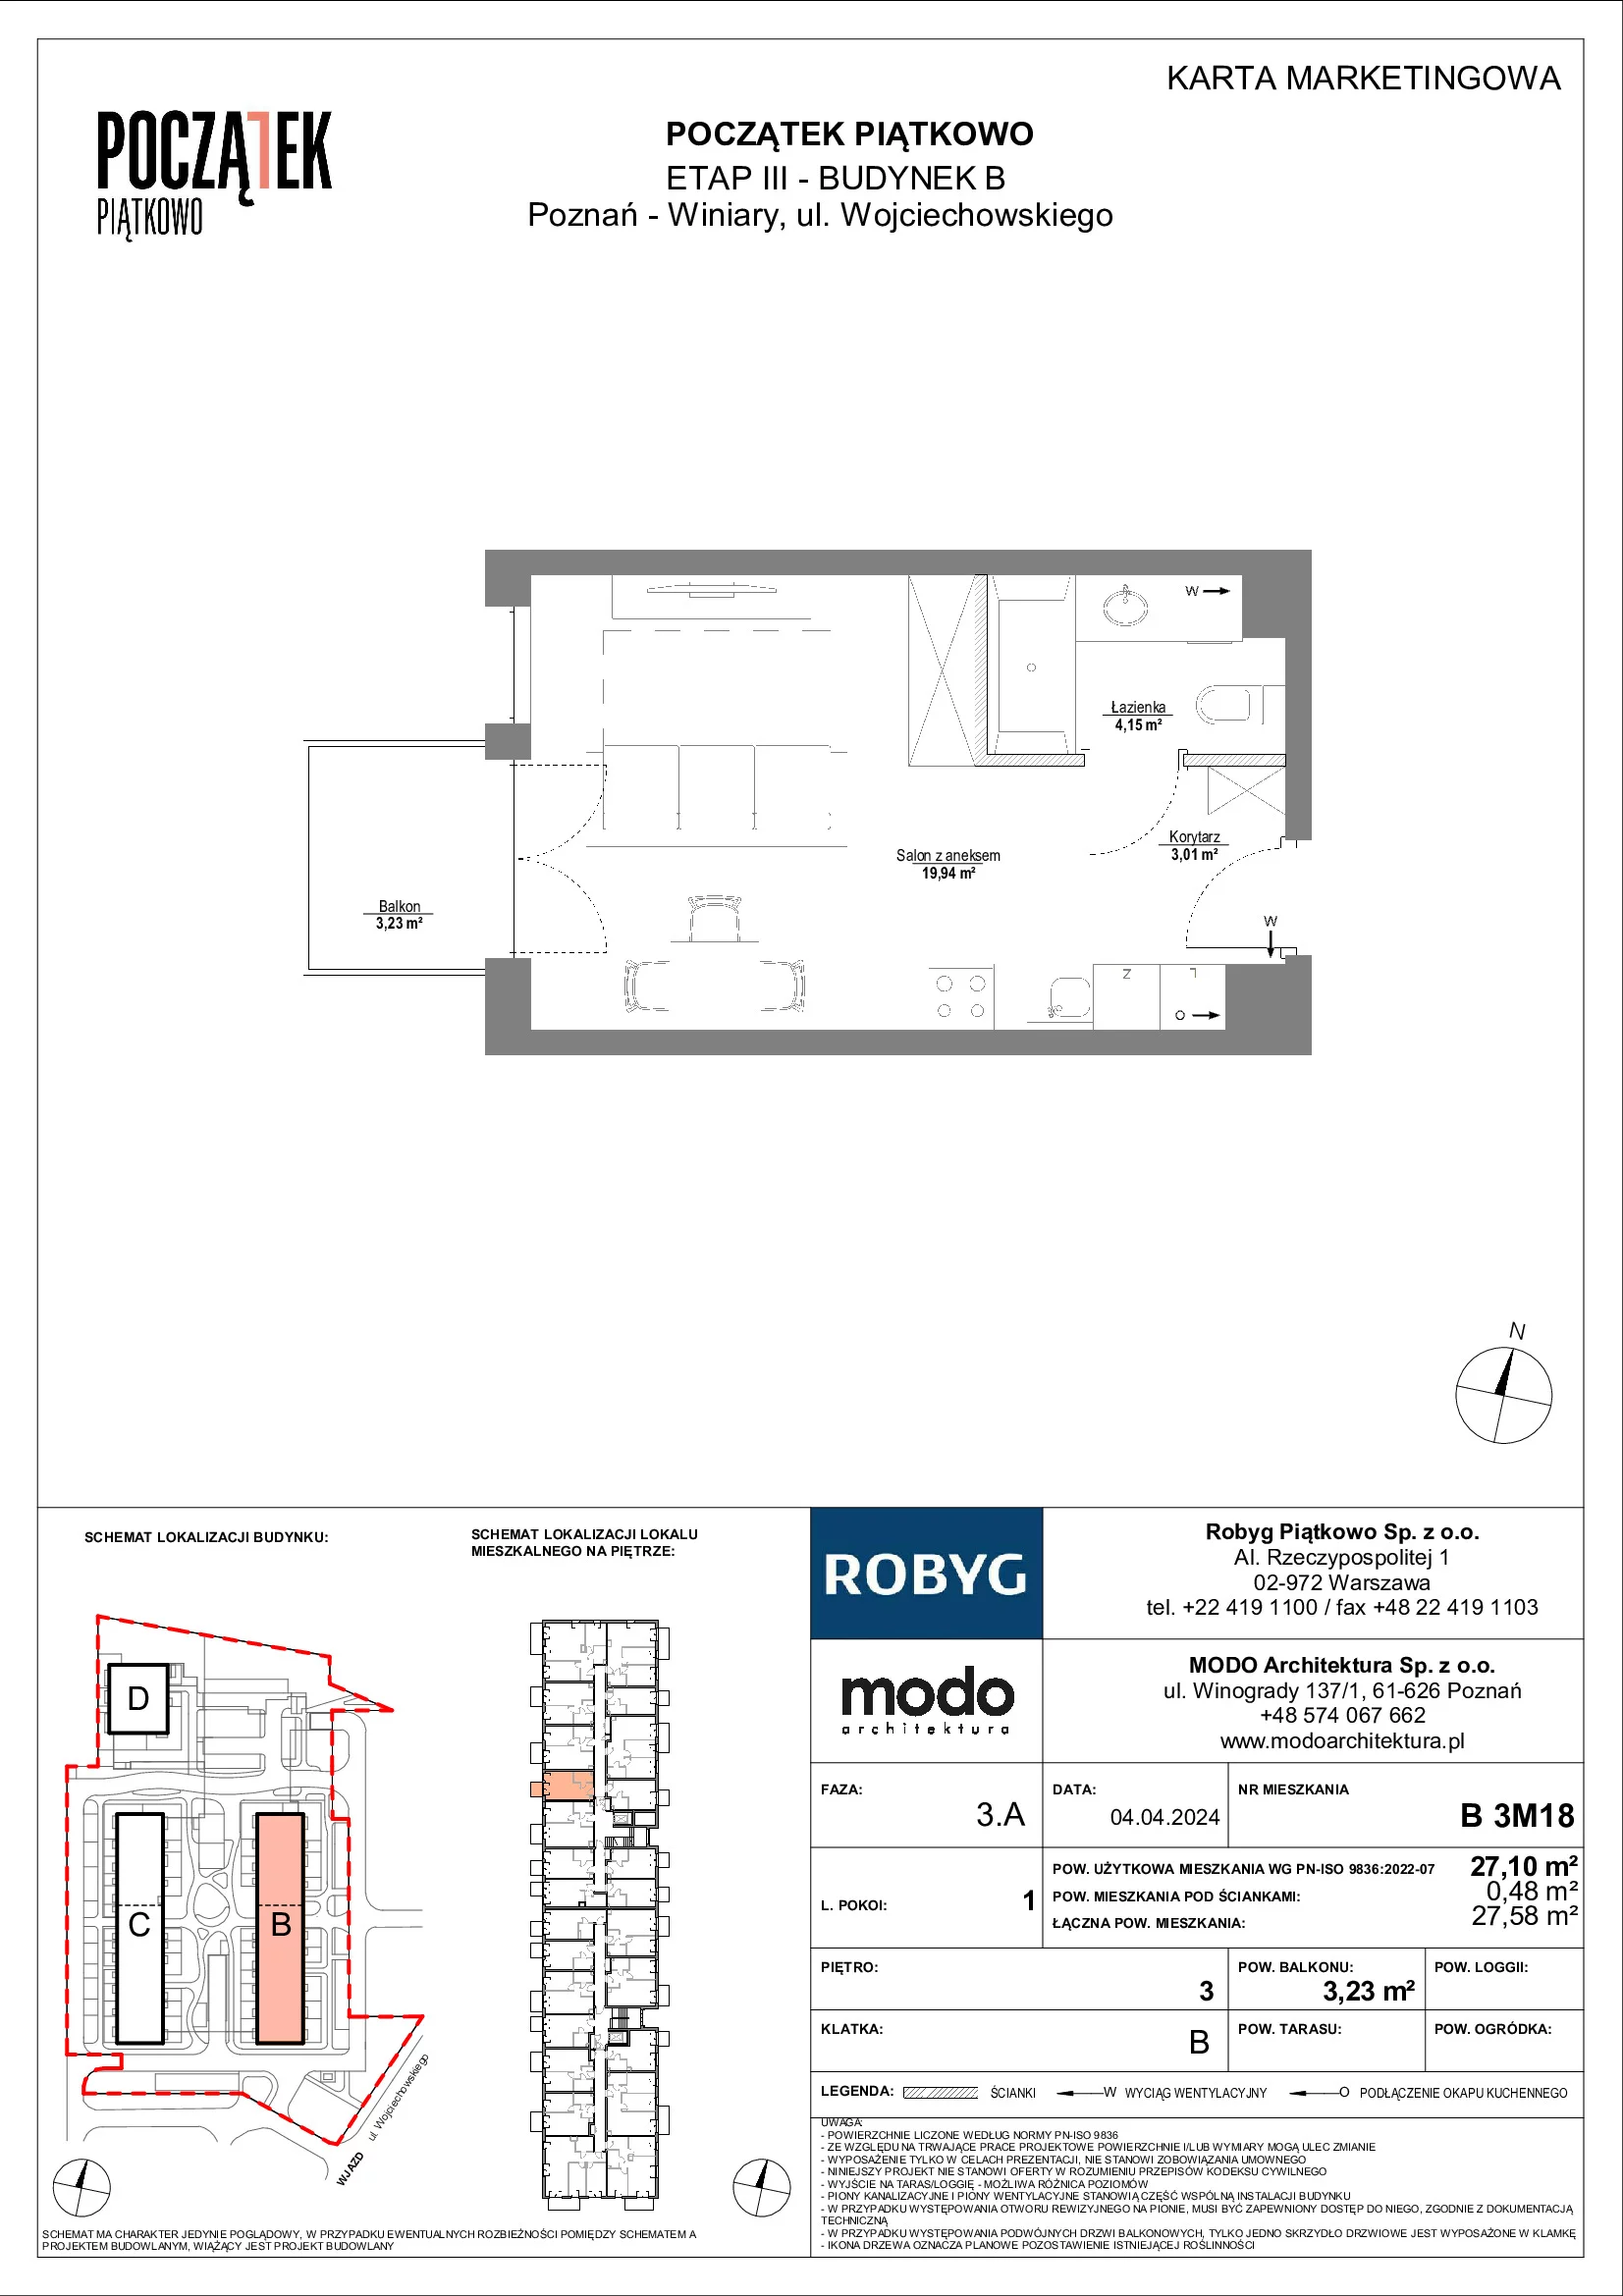 Mieszkanie 27,10 m², piętro 3, oferta nr B.3M18, Początek Piątkowo, Poznań, Piątkowo, ul. Wojciechowskiego